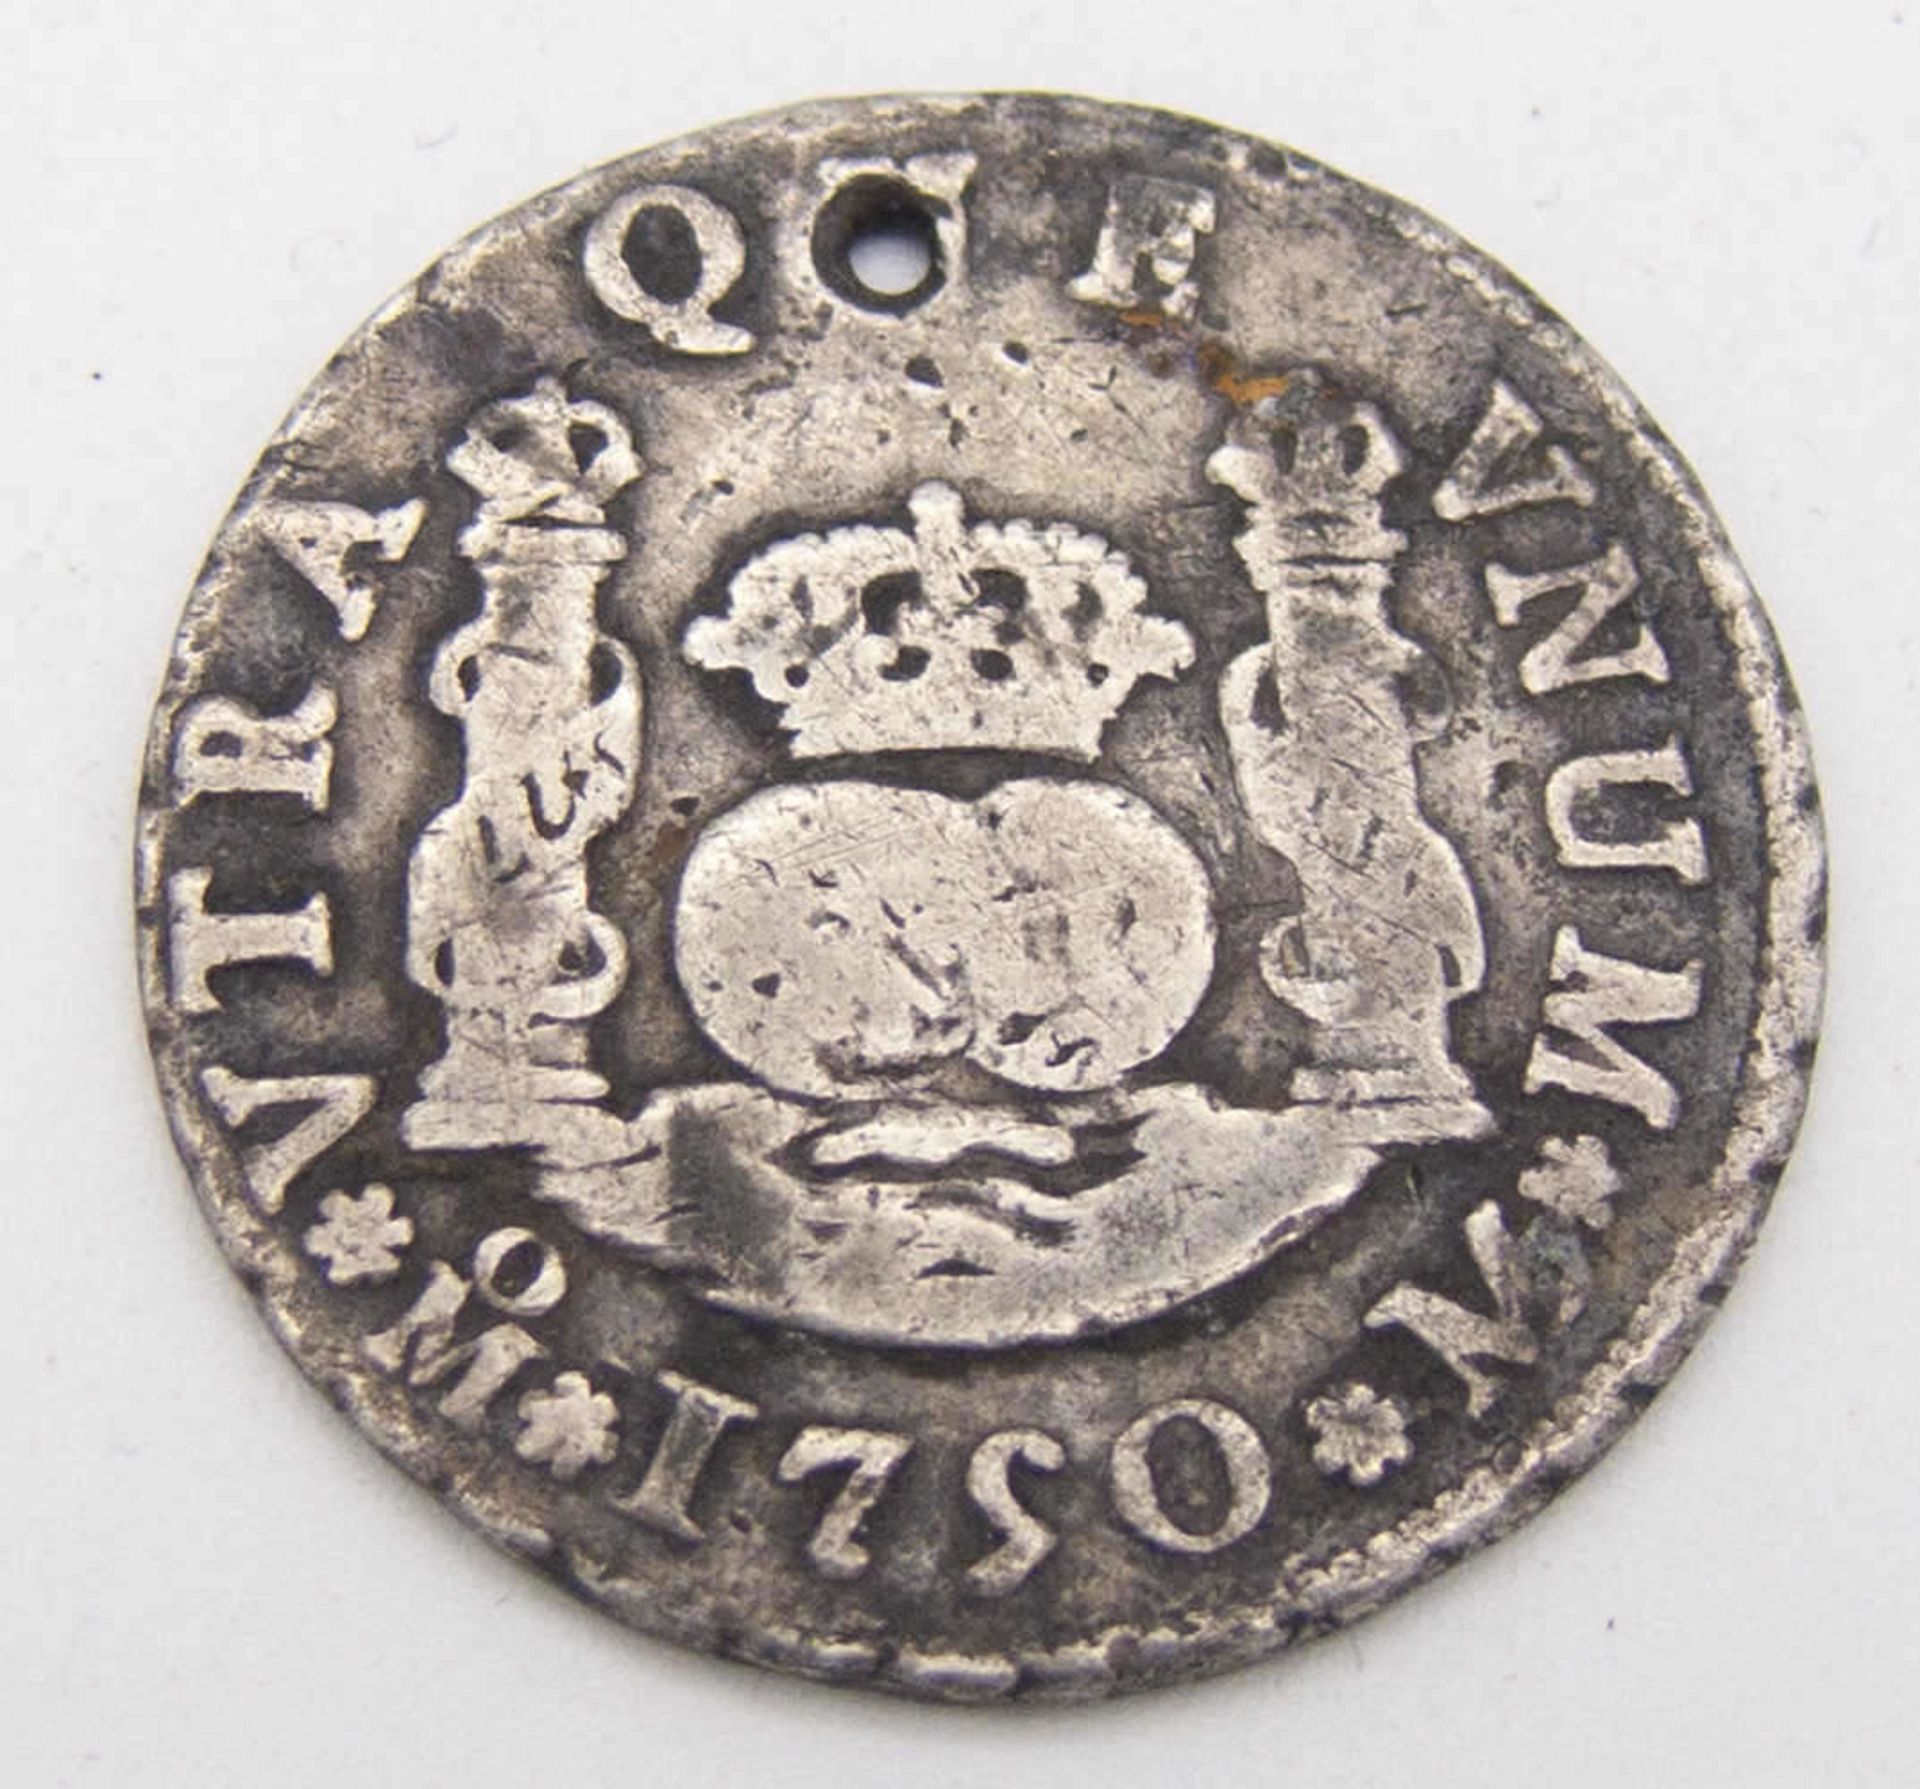 Spanien 1750, 2 Real - Silbermünze. Gelocht. Erhaltung: ss.Spain 1750, 2 Real - silver coin. - Bild 2 aus 2